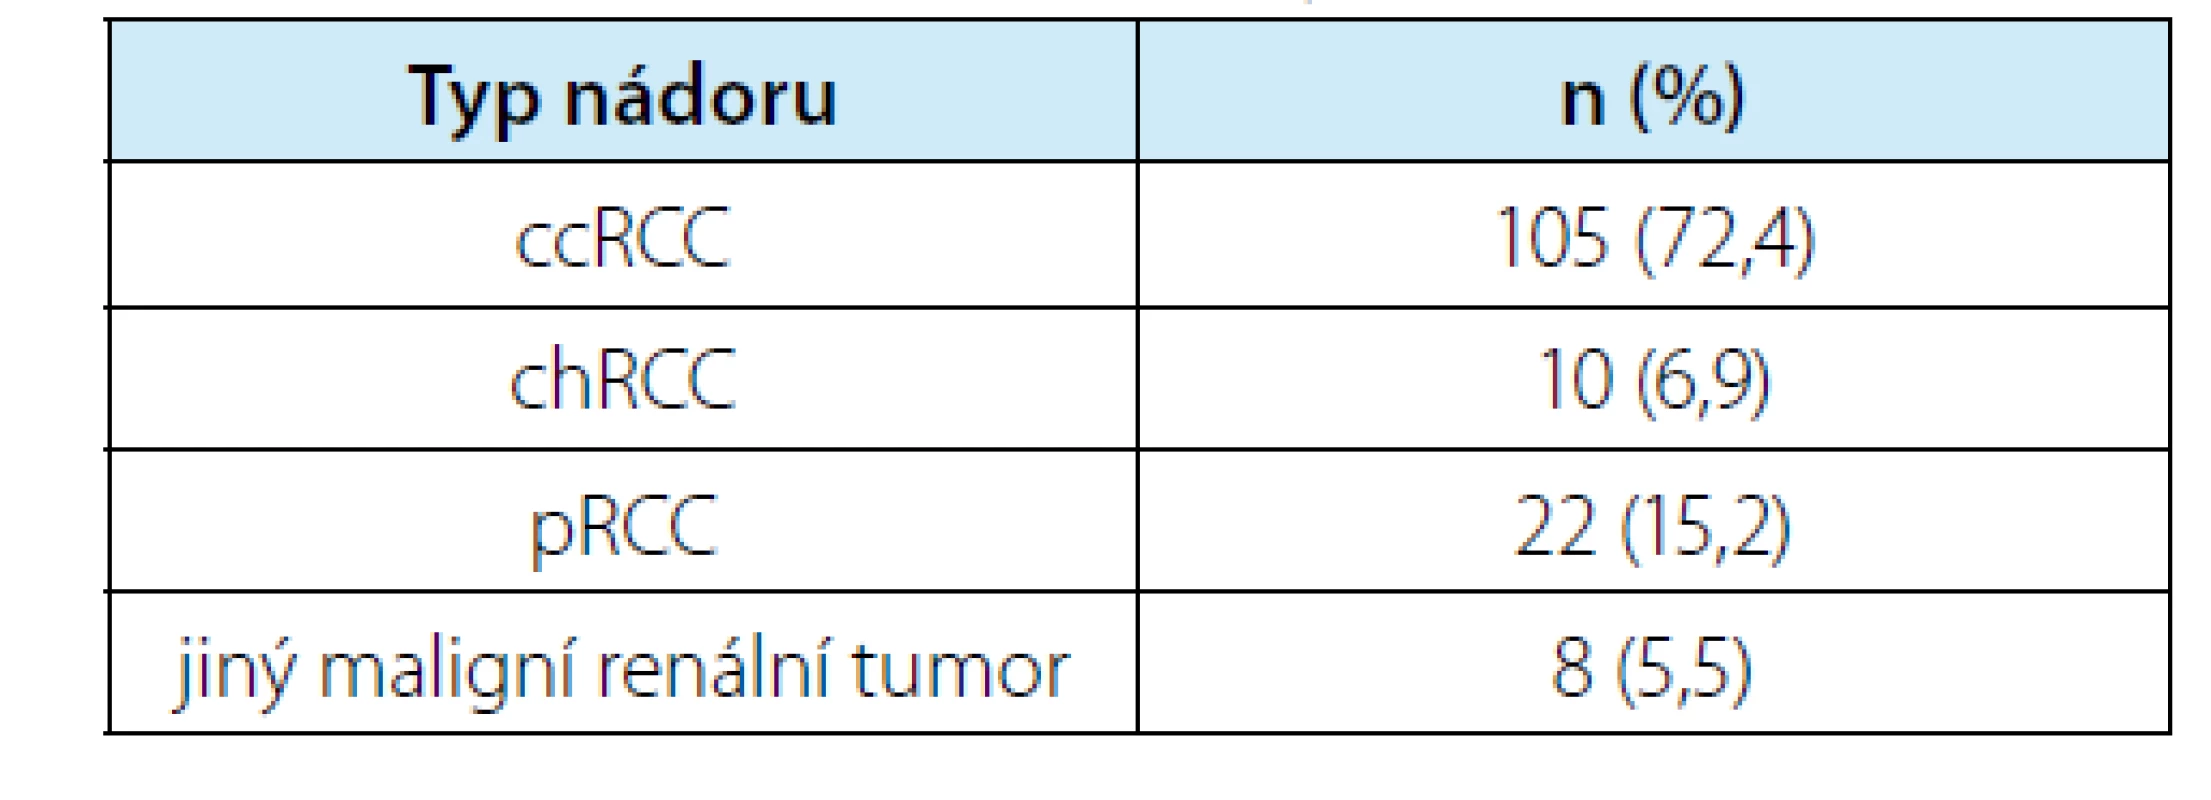 Zastoupení jednotlivých typů maligních nádorů
ze všech 145 odstraněných ložisek (ccRCC = světlobuněčný
renální karcinom, chRCC = chromofobní
renální karcinom, pRCC = papilární renální karcinom)<br>
Tab. 7. Proportions of individual types of malignant
tumors among all 145 removed lesions (ccRCC = clear
cell renal cell carcinoma, chRCC = chromophobe renal
cell carcinoma, pRCC = papillary renal cell carcinoma)